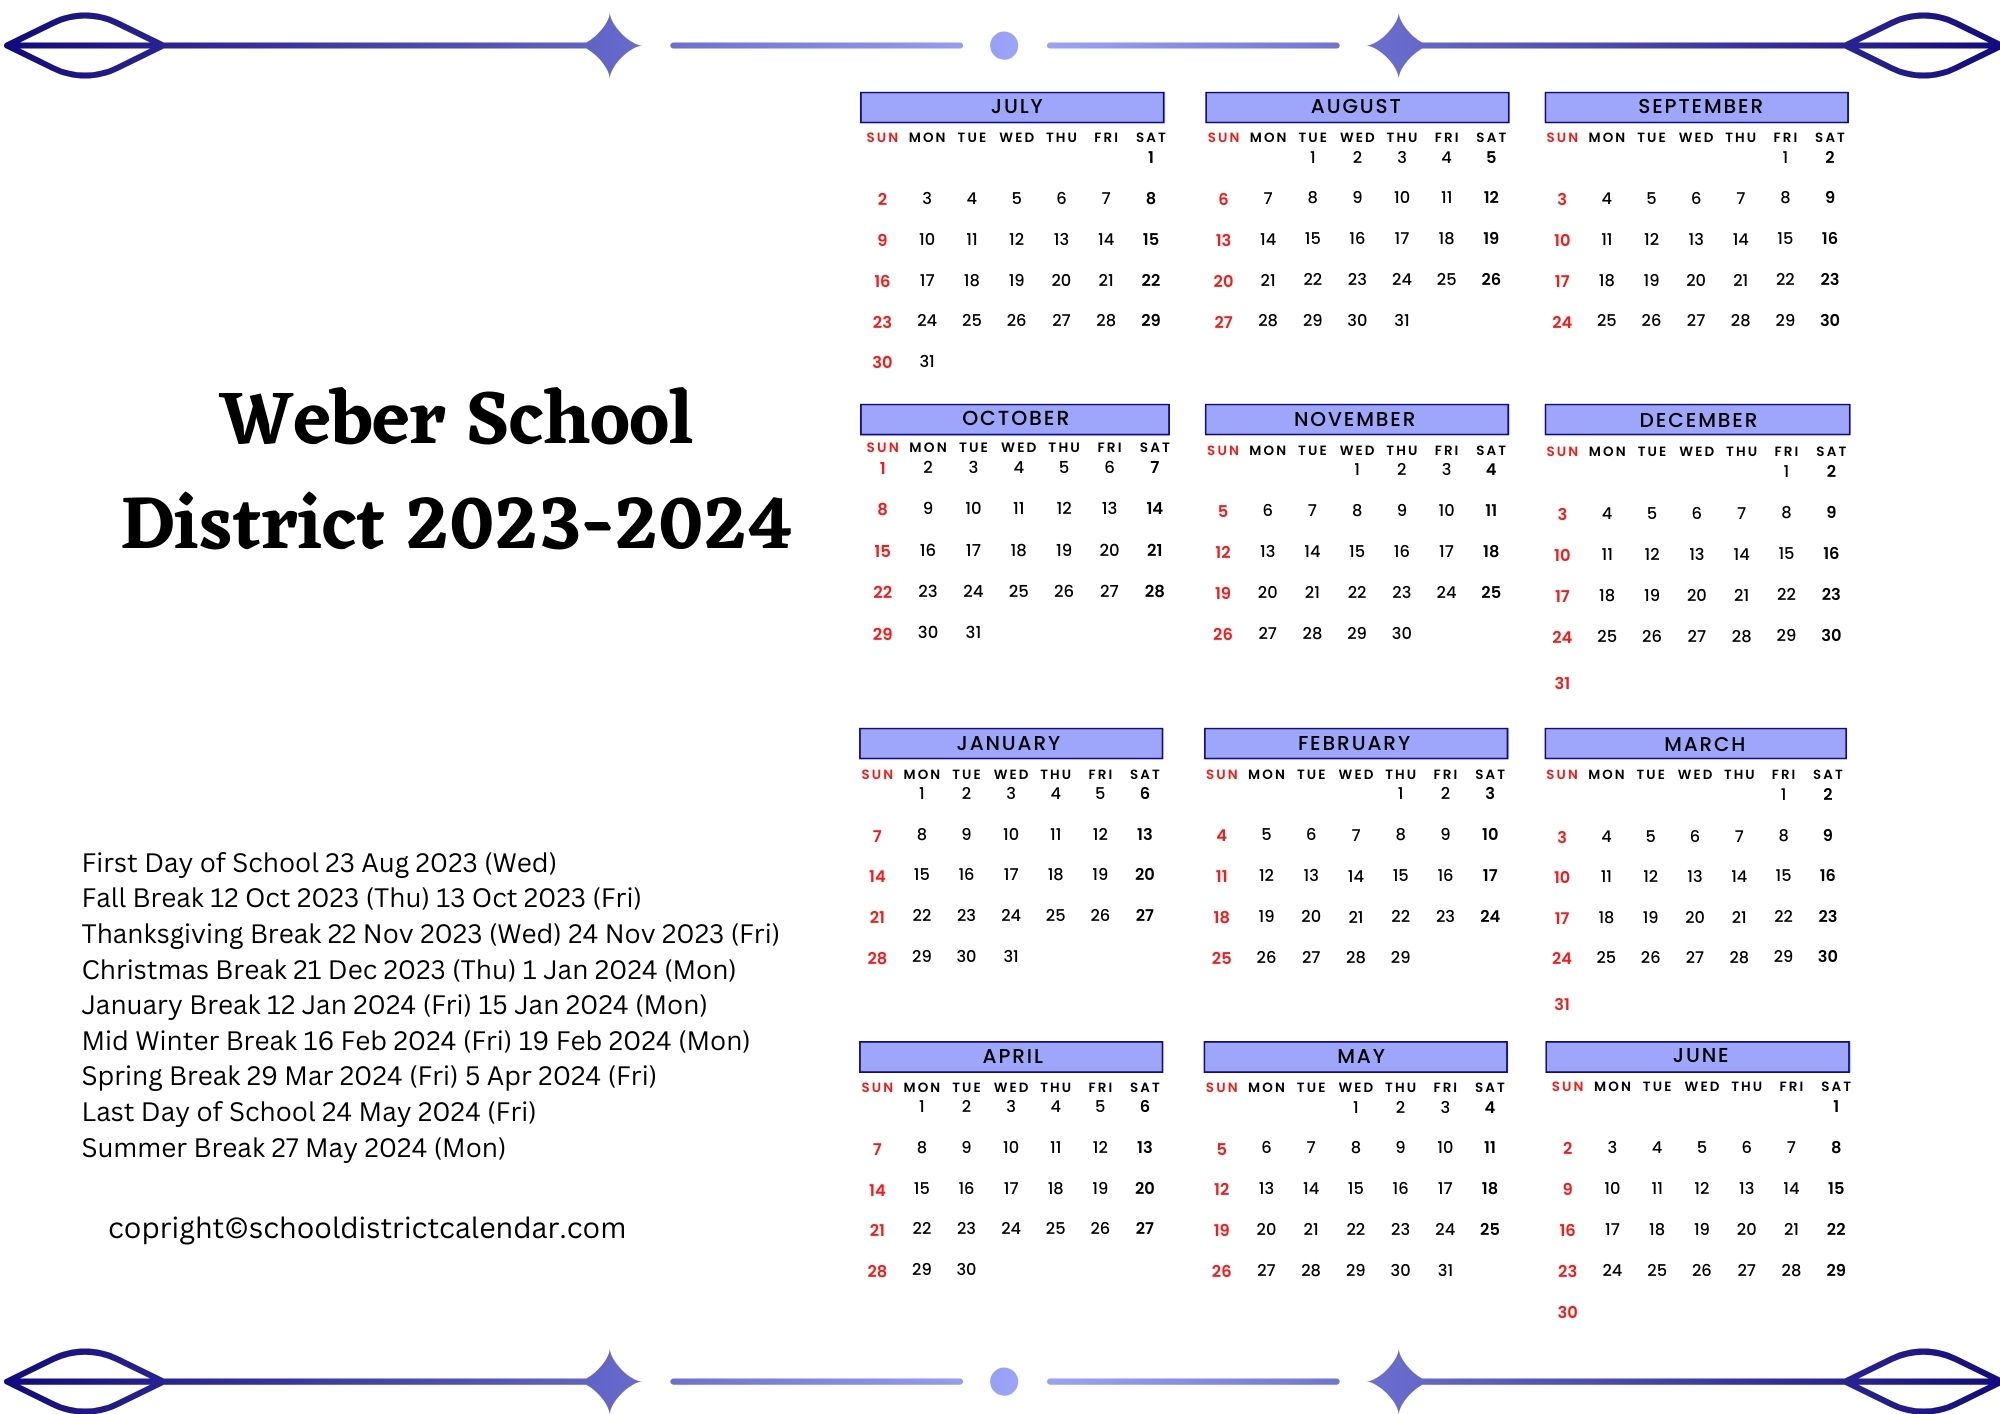 Weber School District Calendar Holidays 20232024